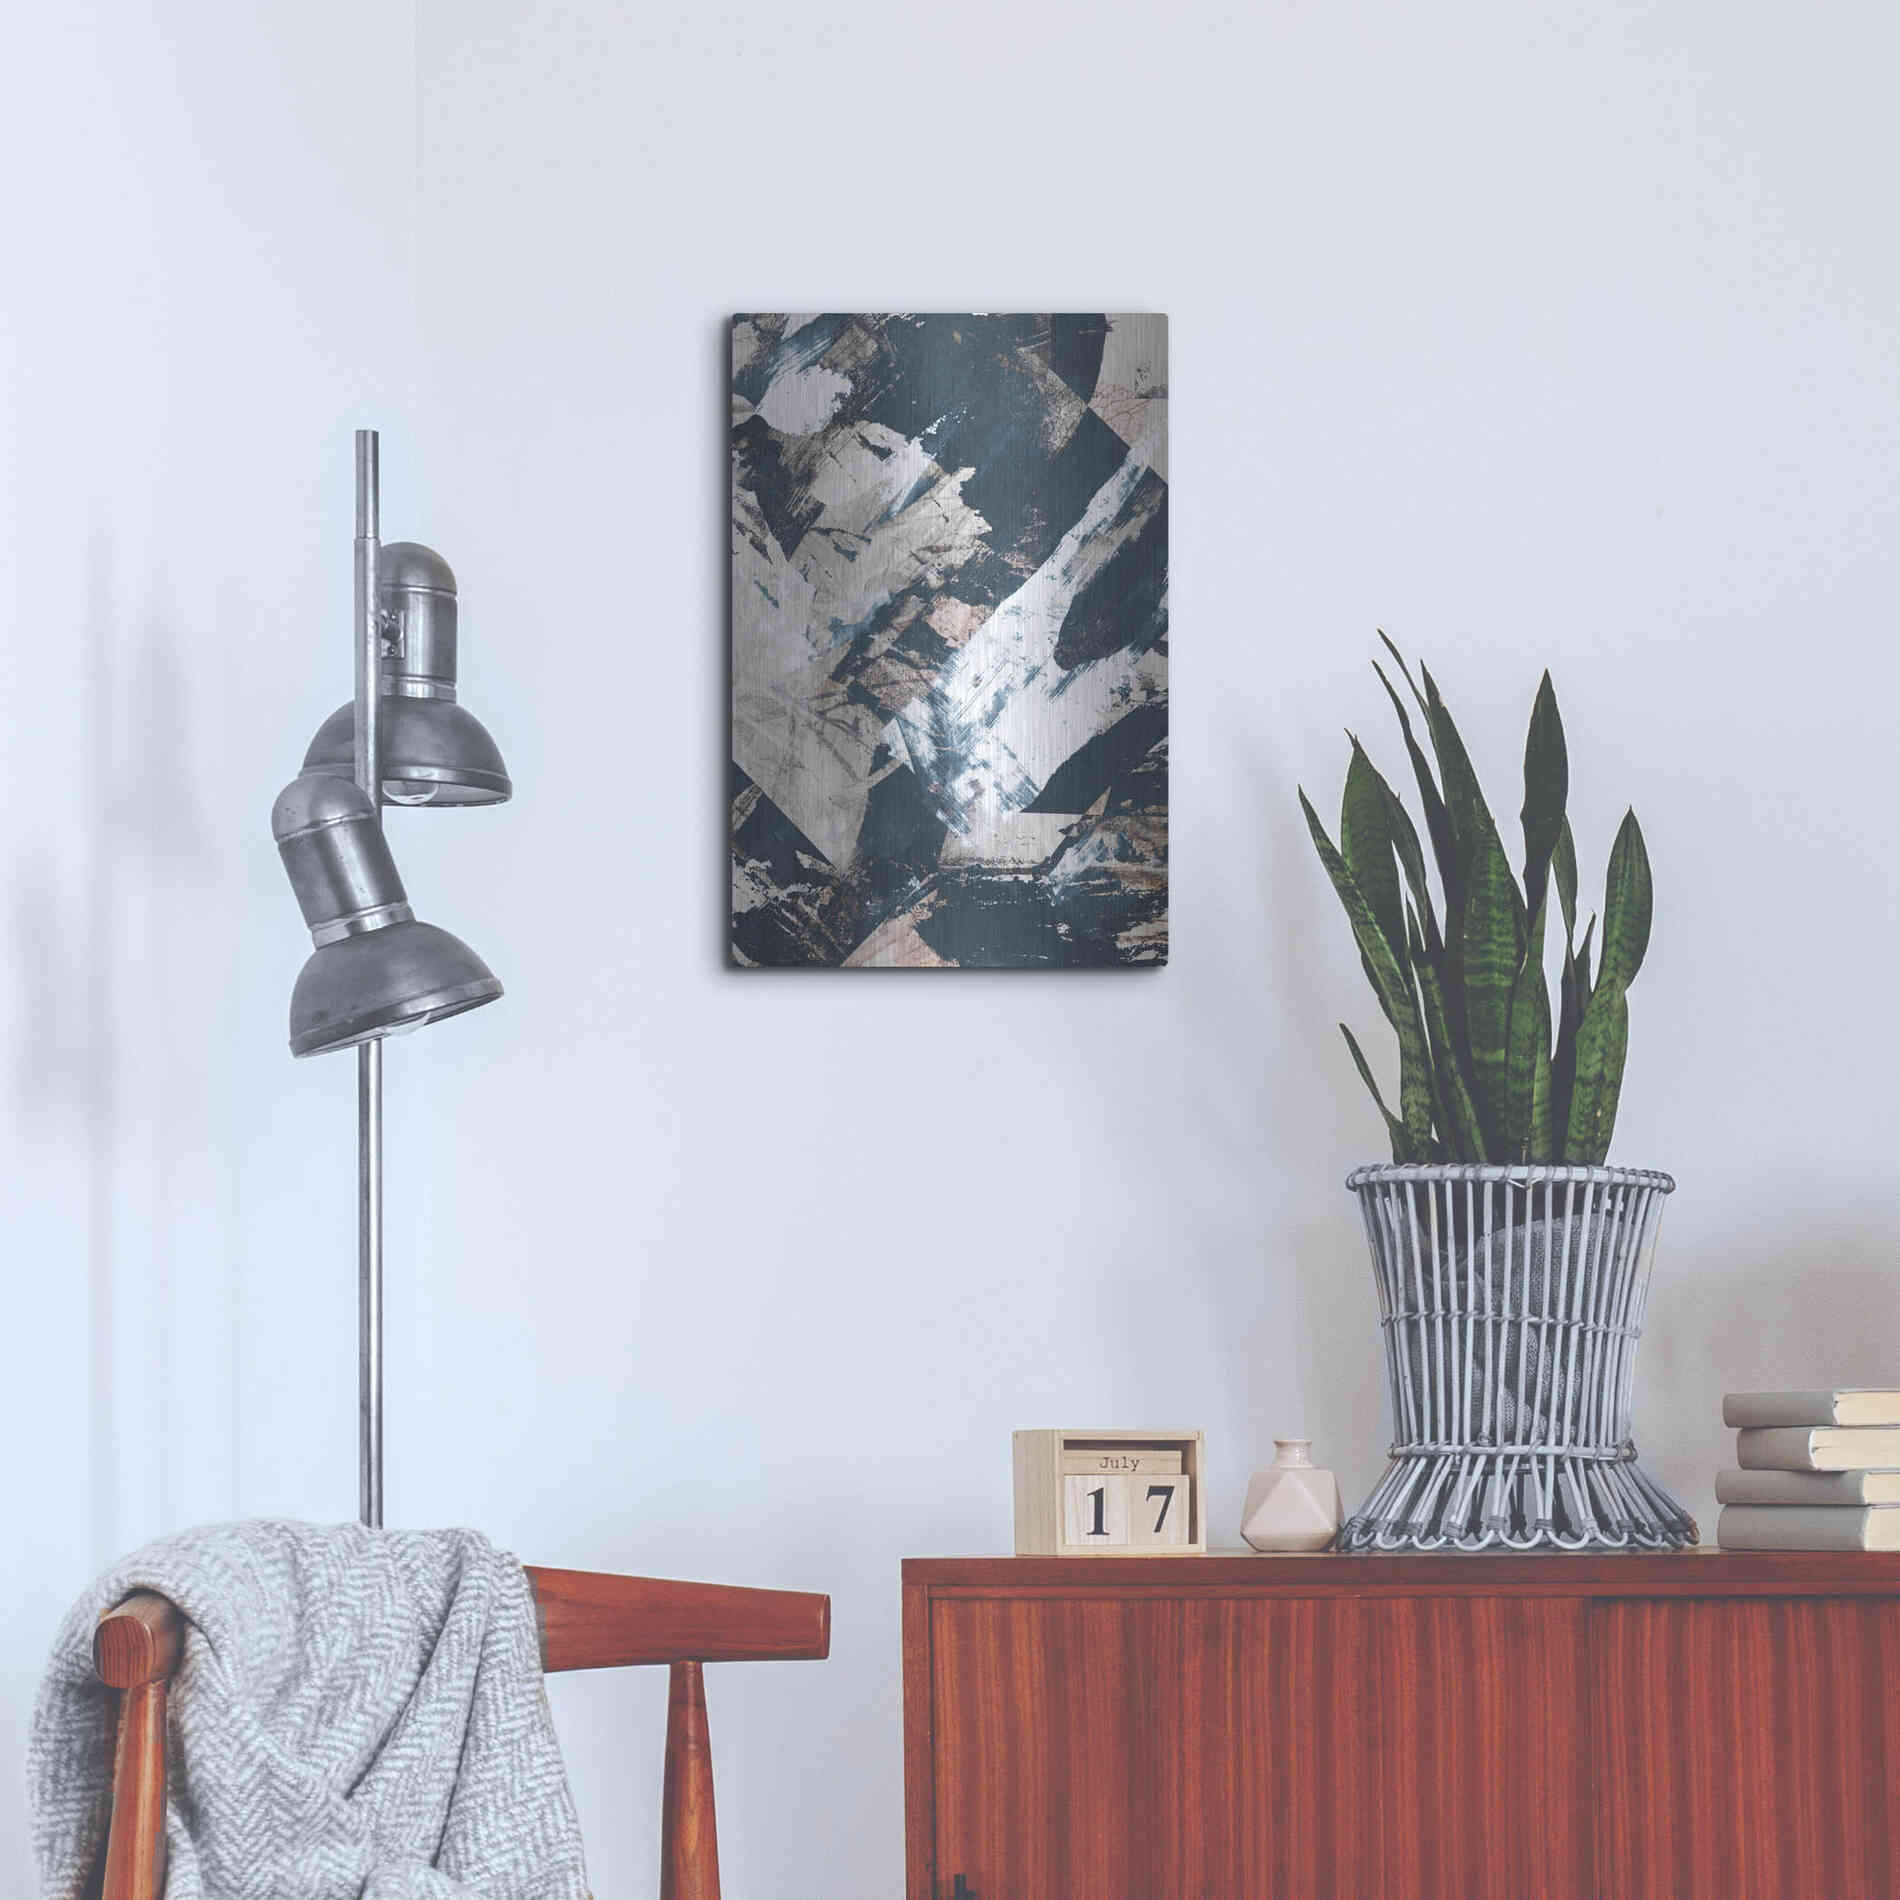 Luxe Metal Art 'Luma' by Design Fabrikken, Metal Wall Art,16x24